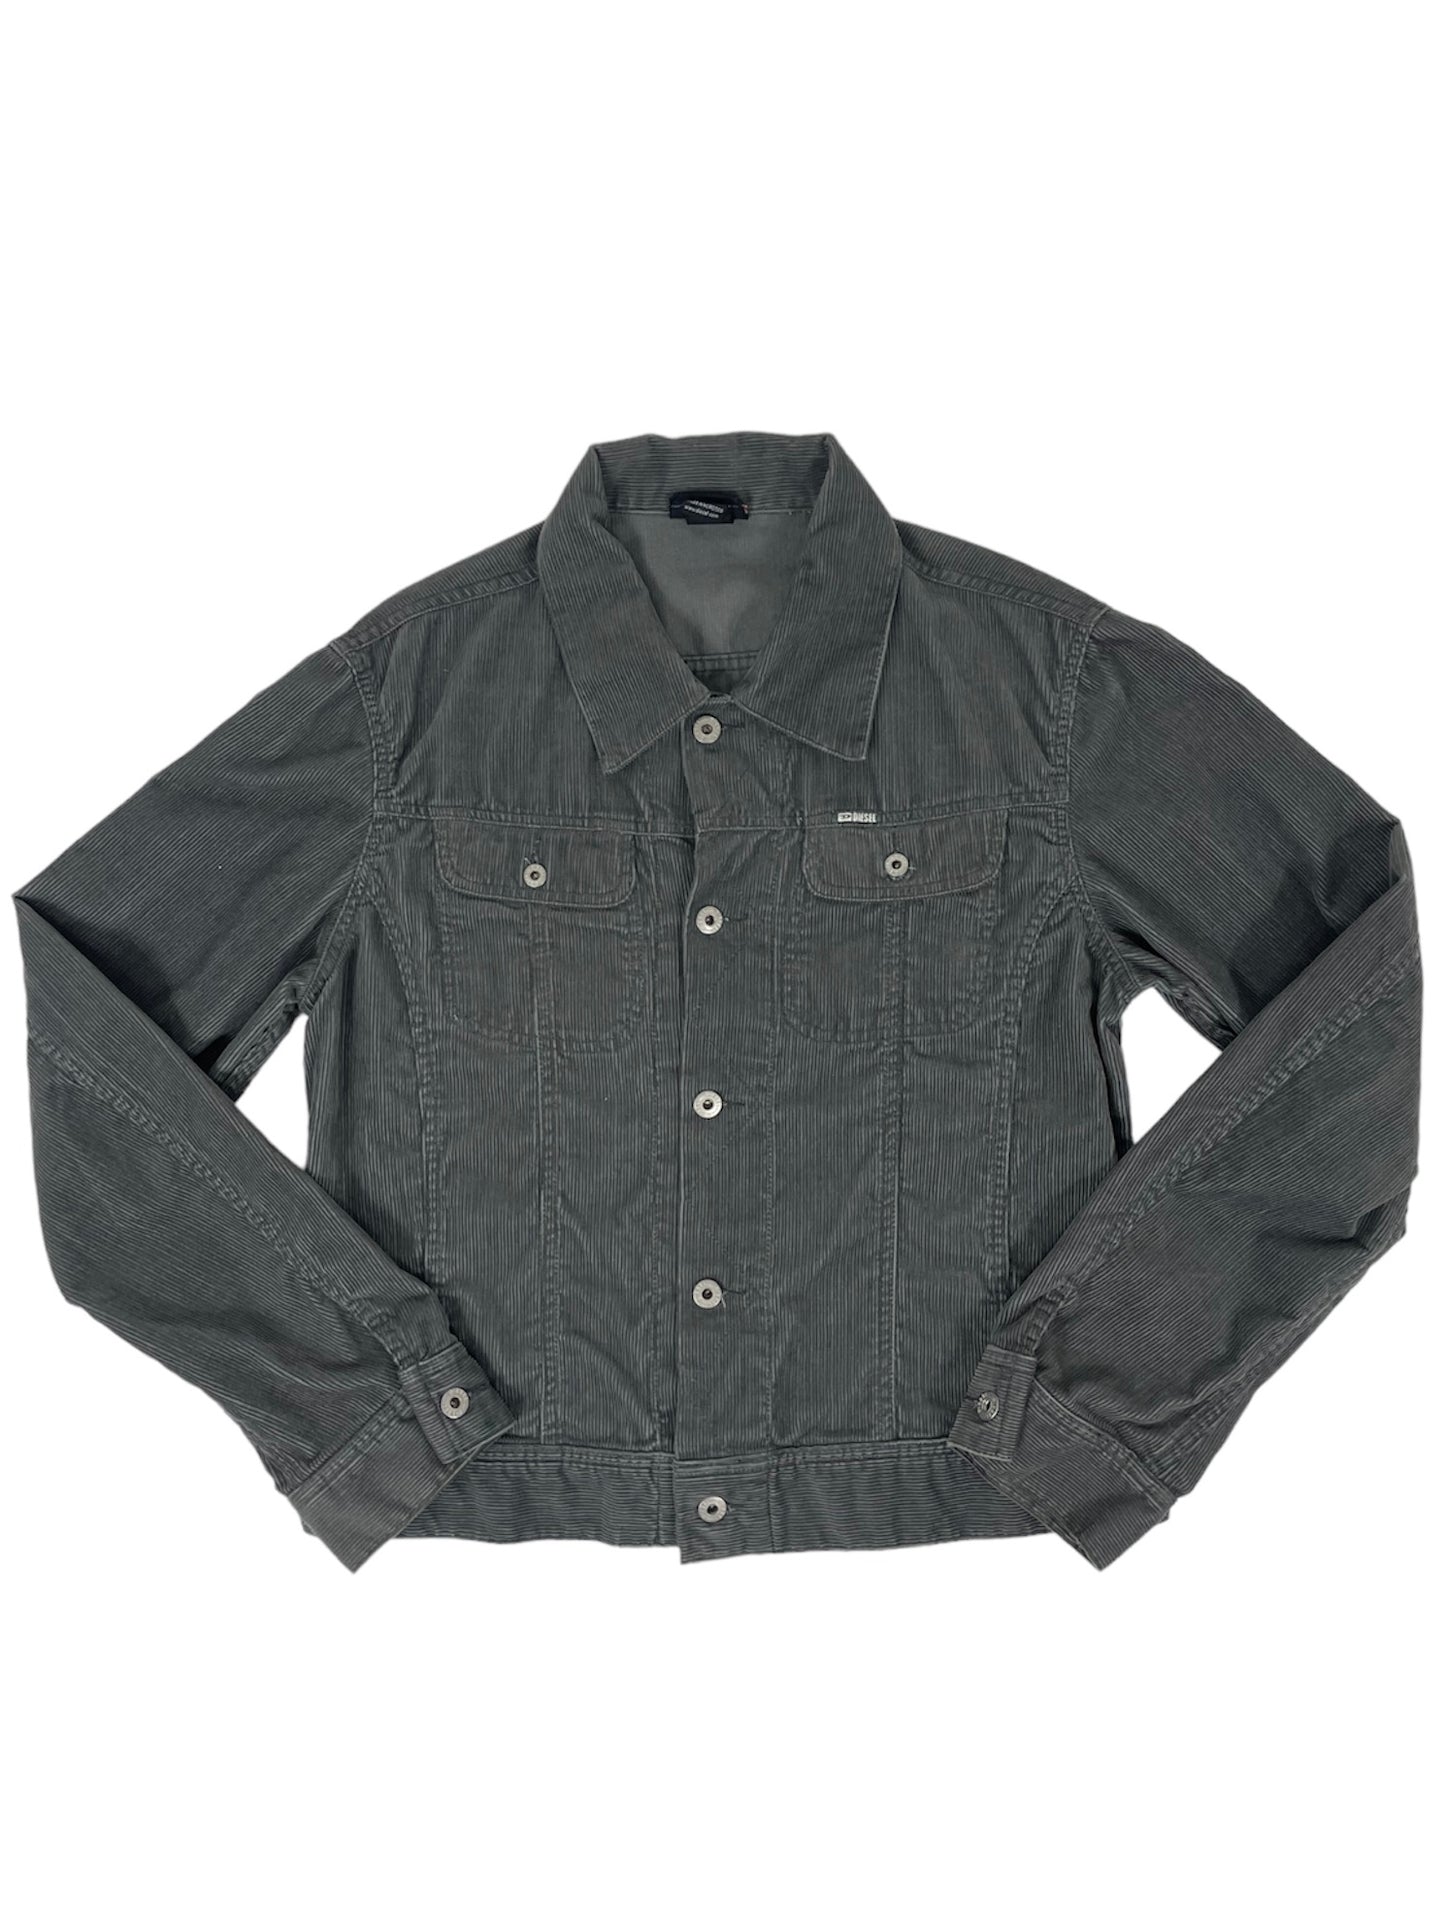 diesel-jacket-velluto-millerighe-grigio